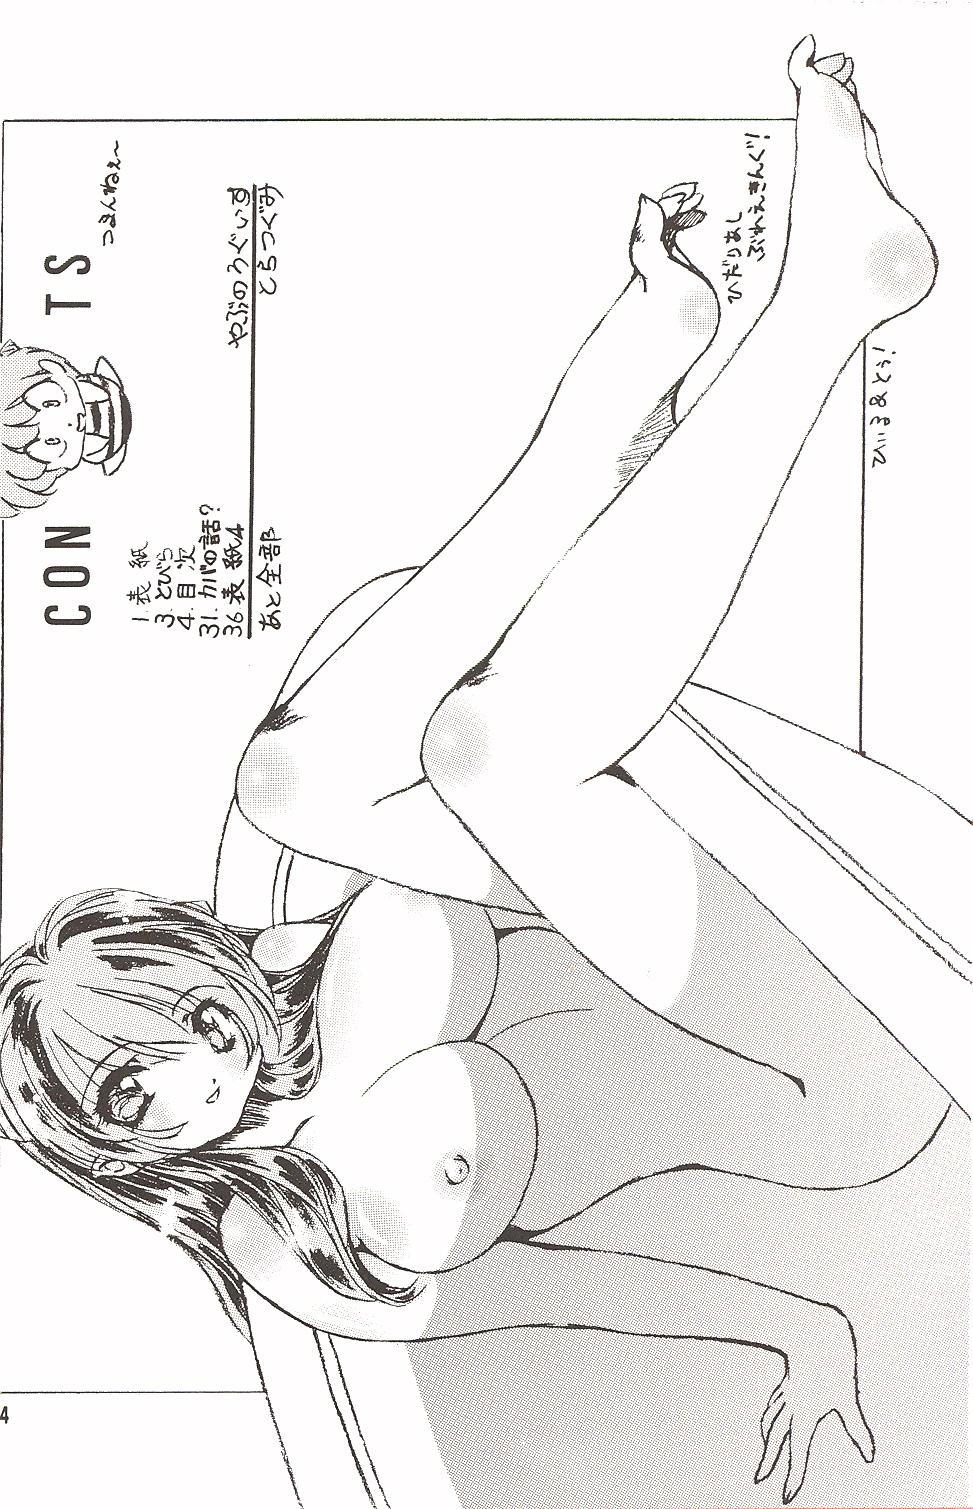 Comendo Naked Dream Lunatic Volume 3 - Urusei yatsura Body Massage - Page 3